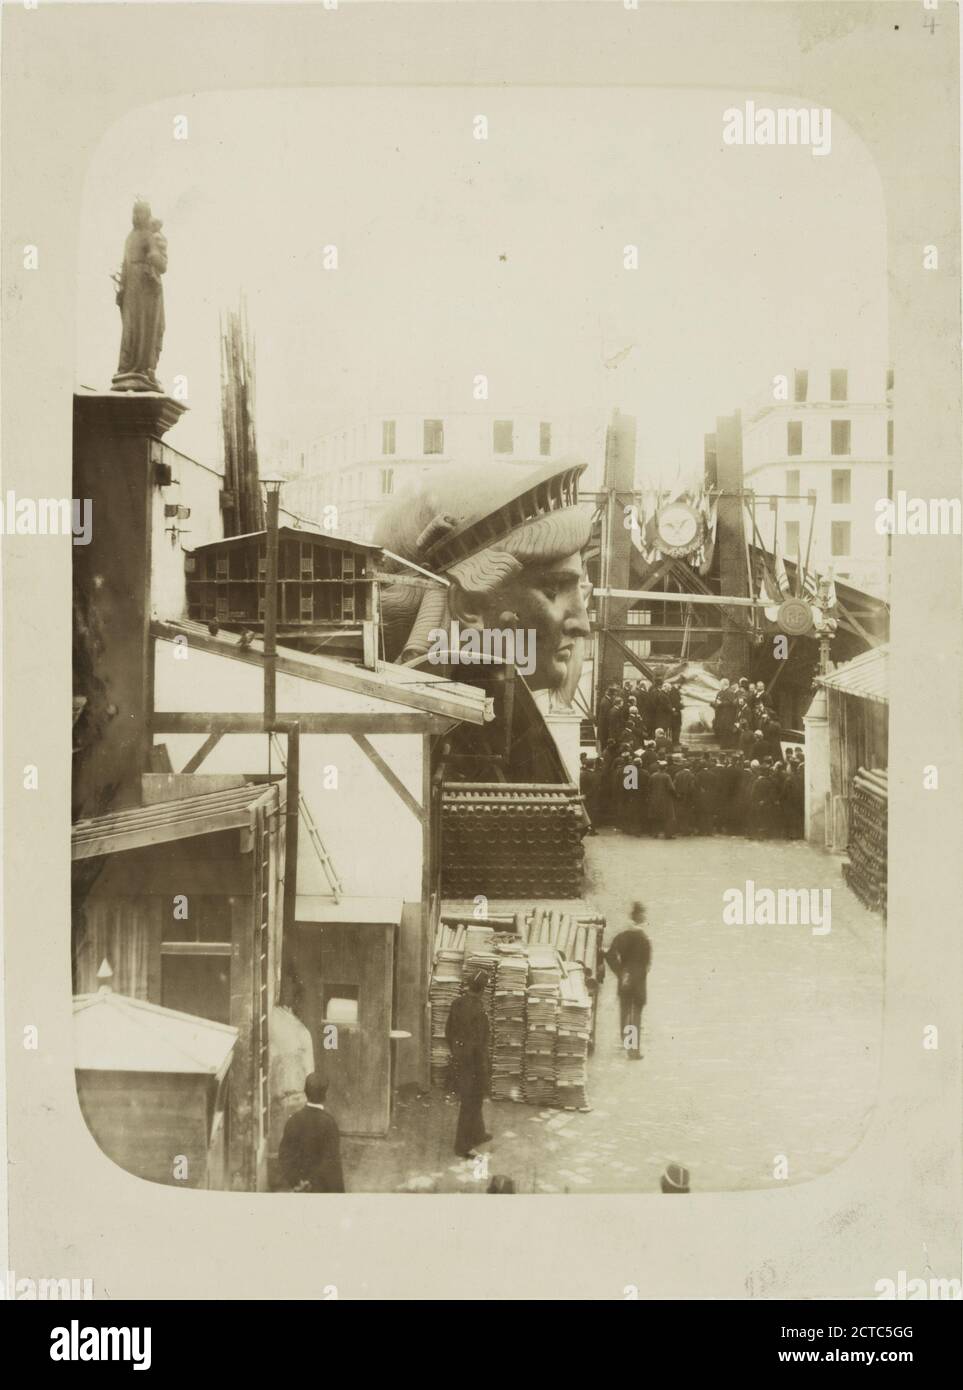 Blick auf den Außenbereich der Werkstatt in Paris, mit Baumaterialien, dem Kopf der Freiheitsstatue und einer Gruppe von Männern, die sich vor dem linken Fuß der Statue versammelt haben., Standbild, Fotografien, 1883, Fernique, Albert, 1841-1898 Stockfoto